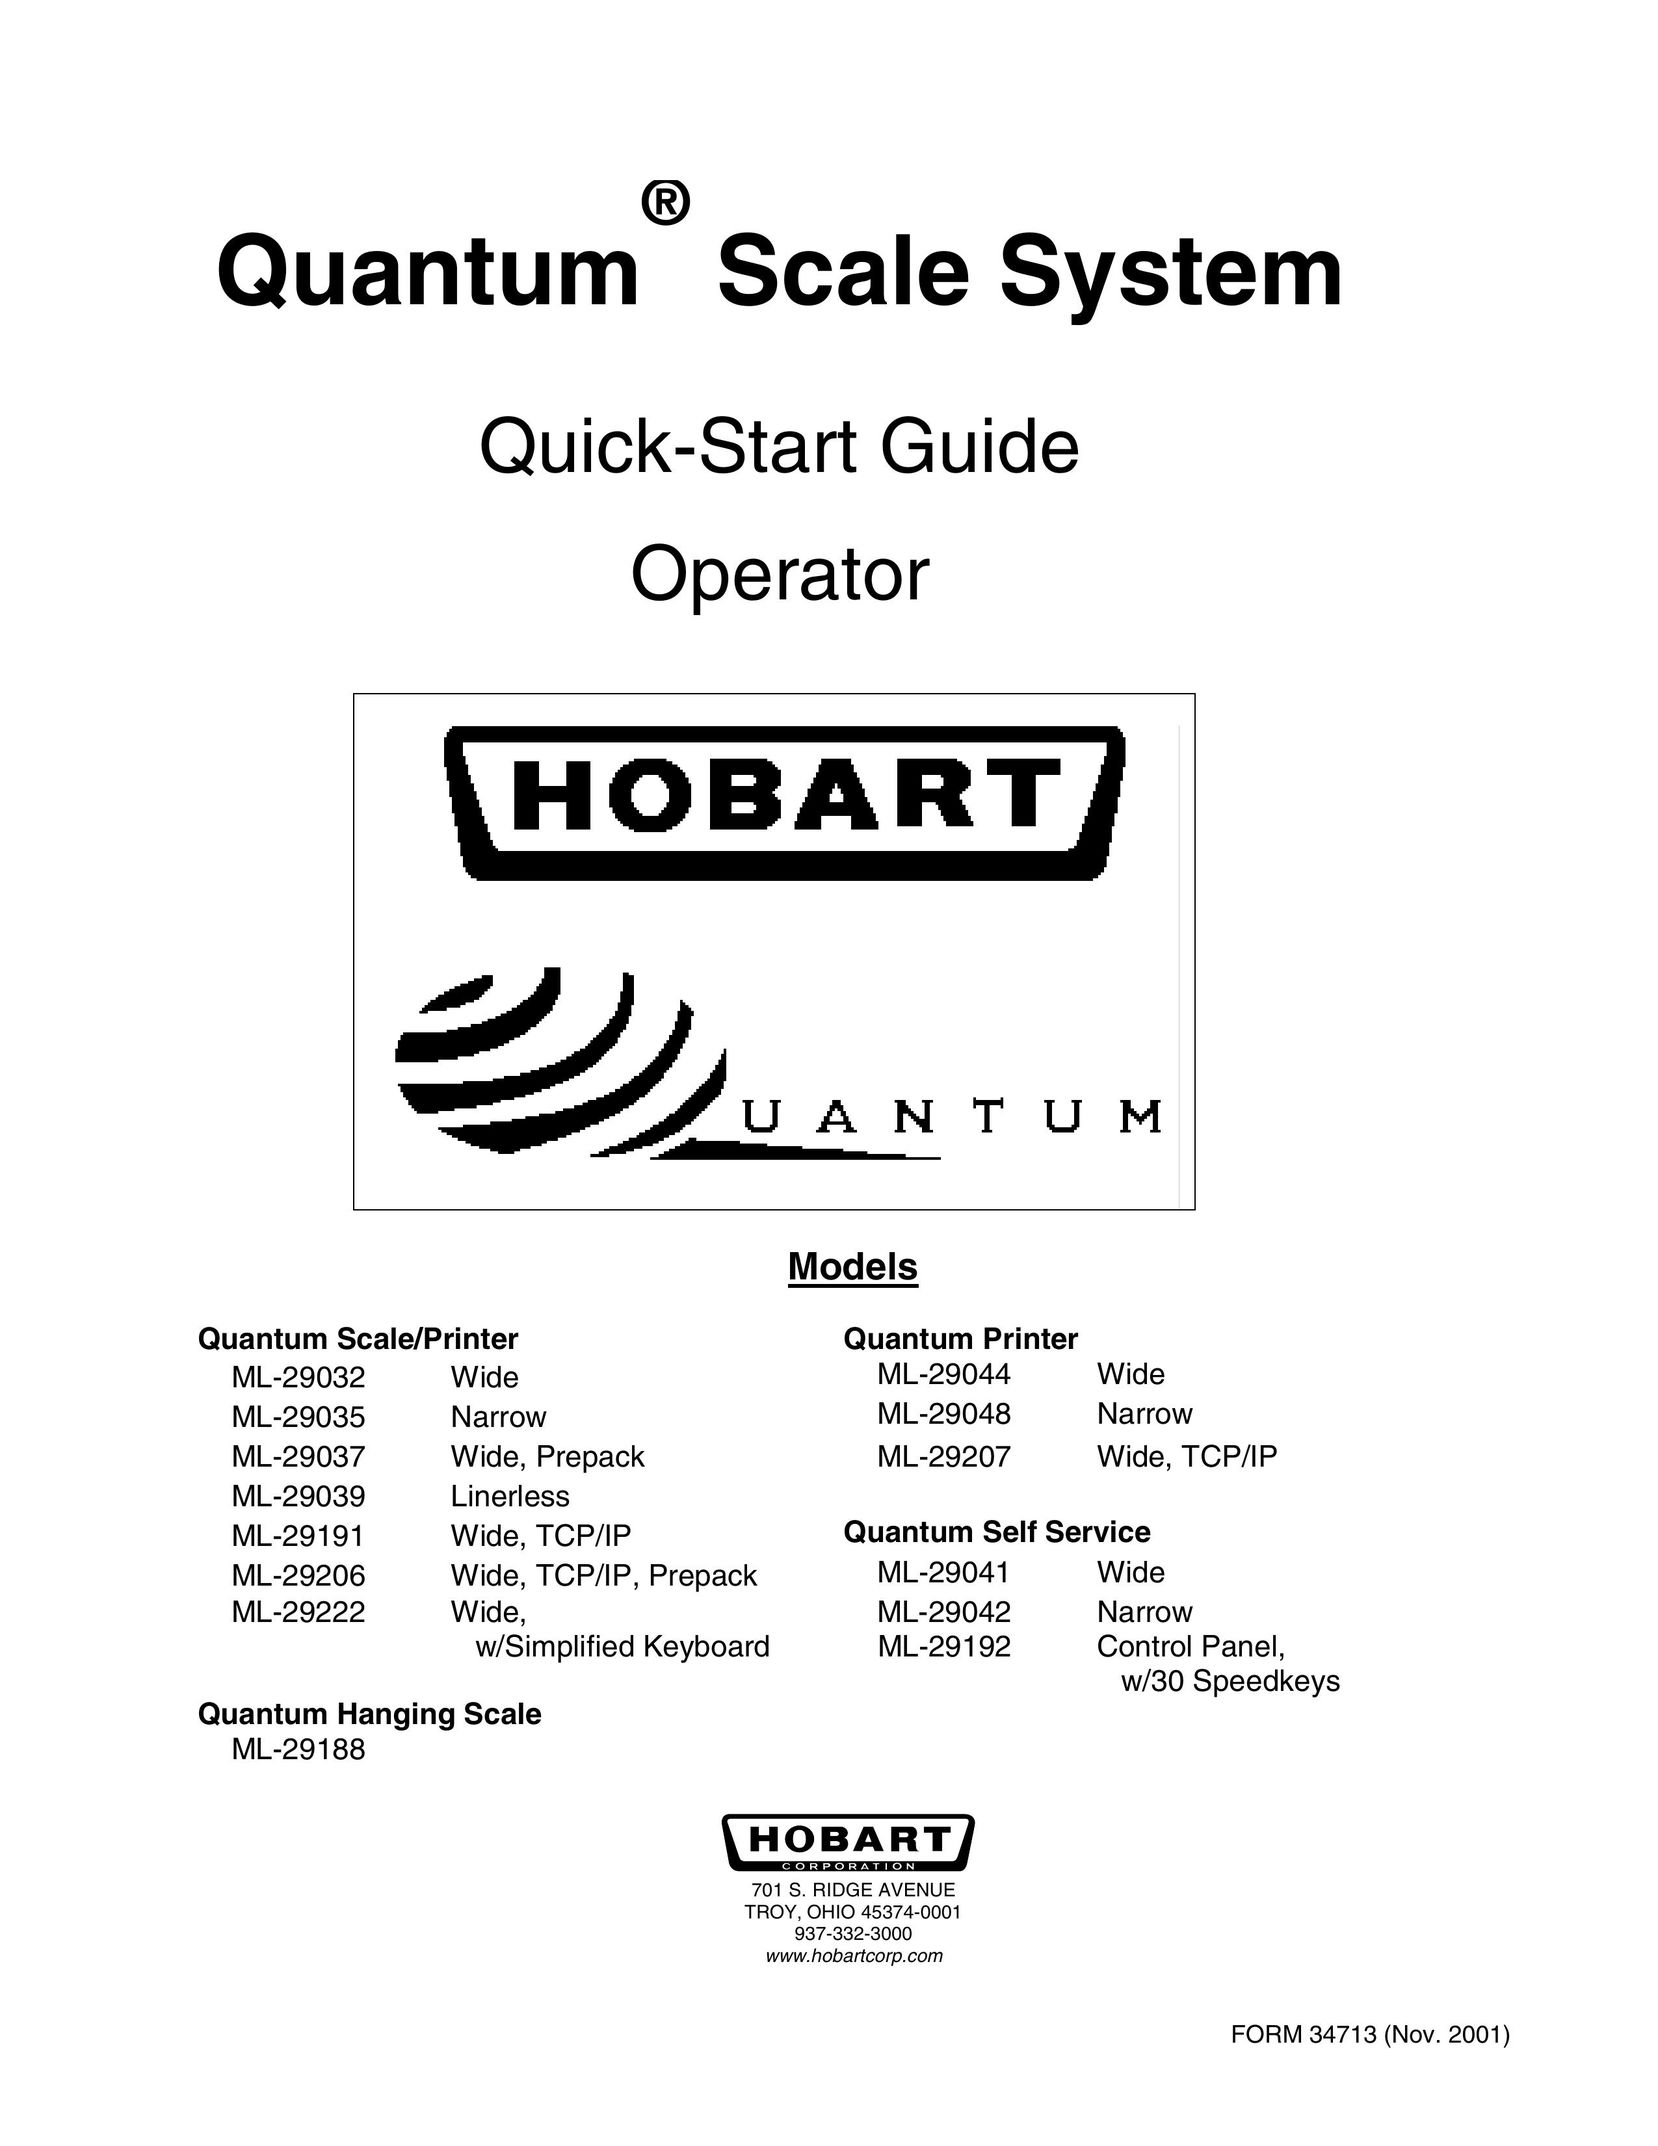 Hobart ML-29222 Printer User Manual